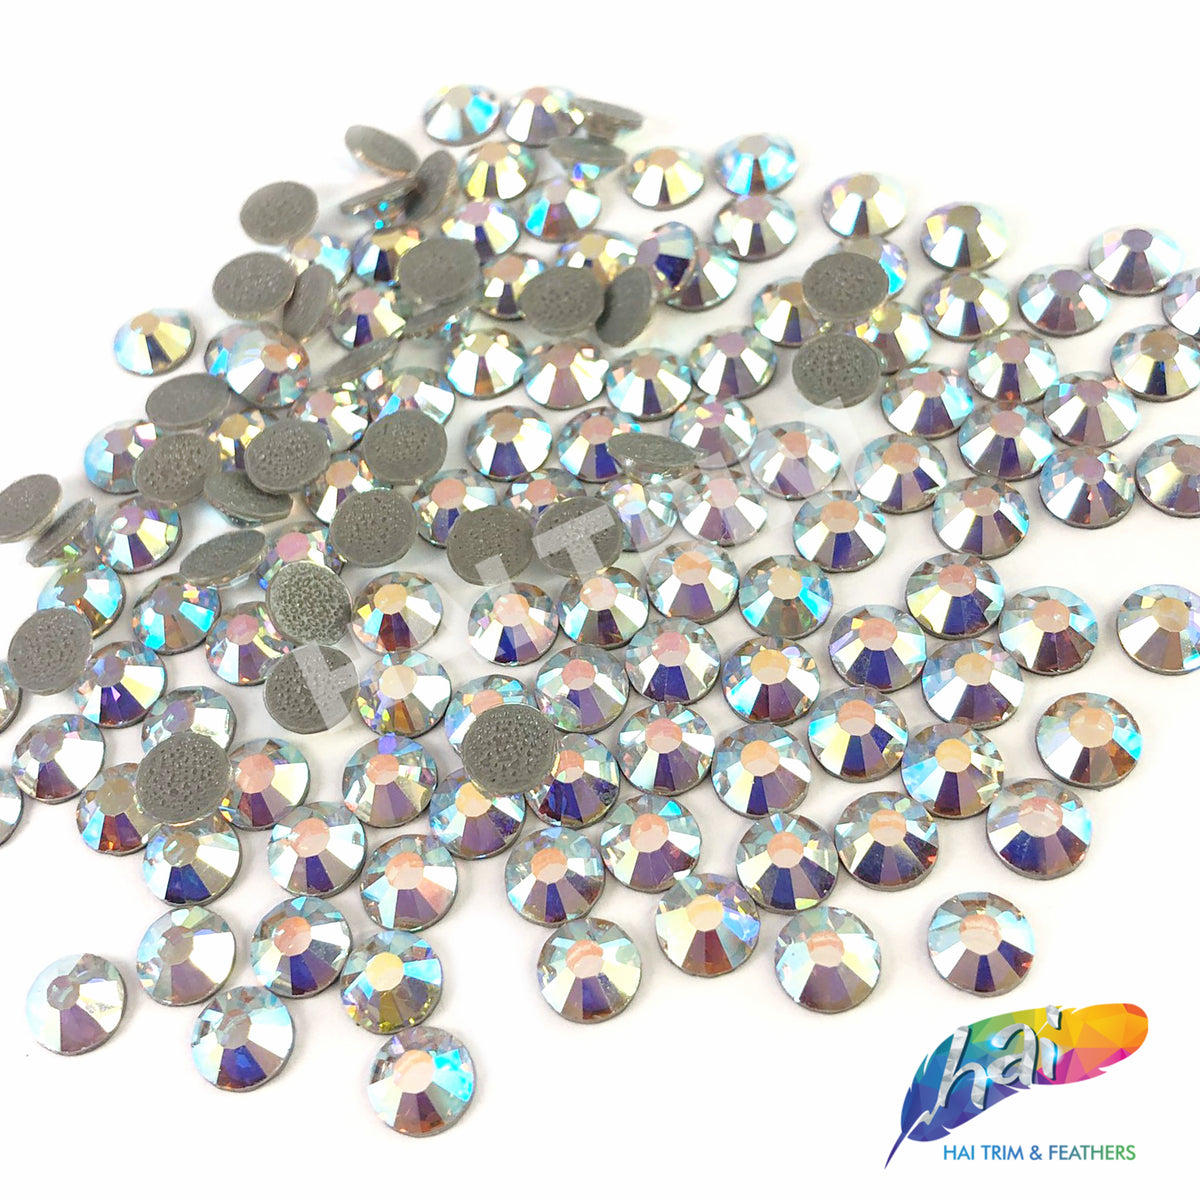 3 Bags Of Preciosa Crystals Flatback Non-hotfix Clear 100 Per Bag(300  total)Ss10